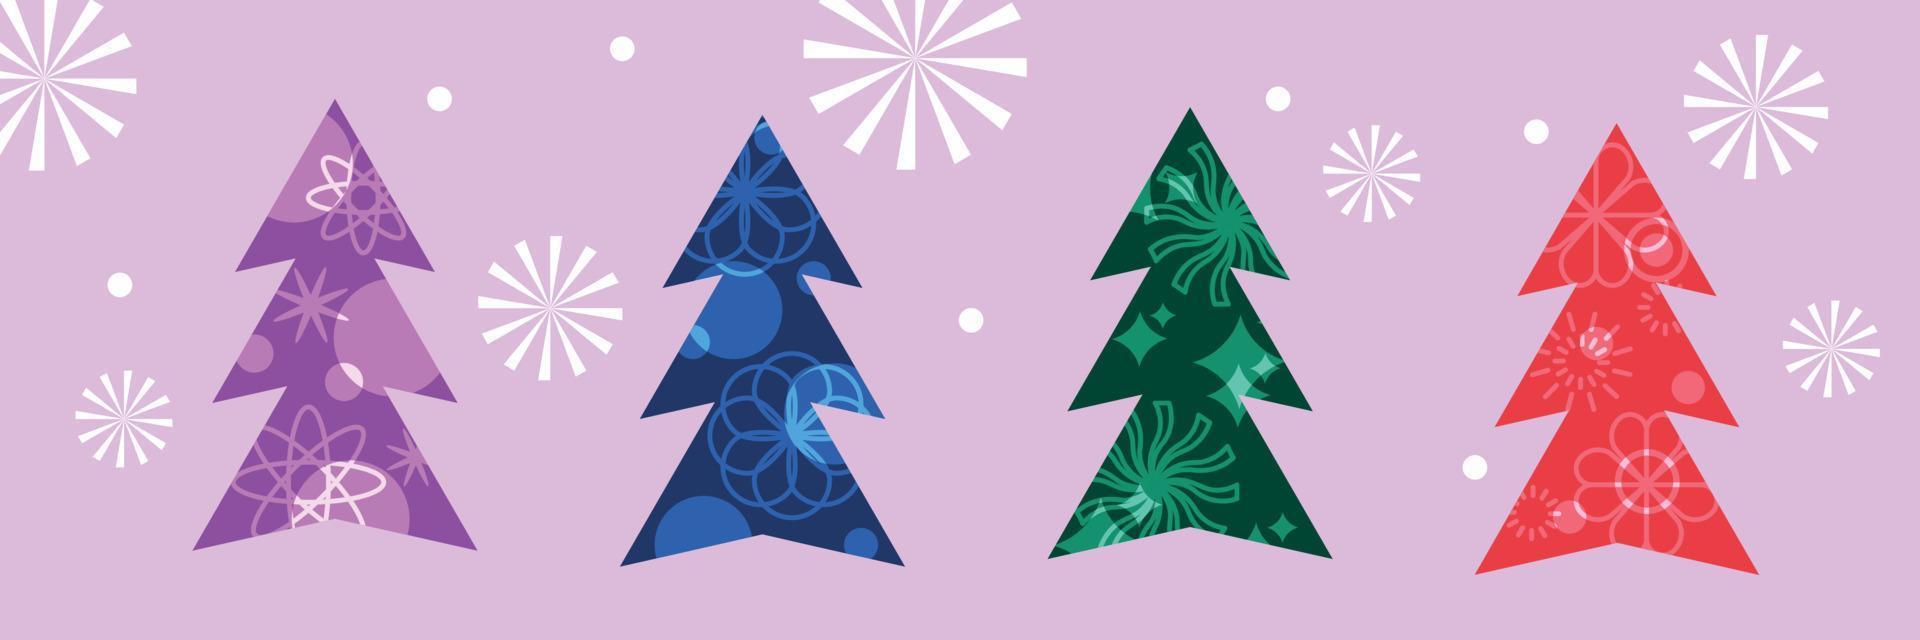 feliz año nuevo y feliz navidad tarjeta de felicitación. árboles de navidad, elementos de decoración, luces. portada de vacaciones, póster. vector